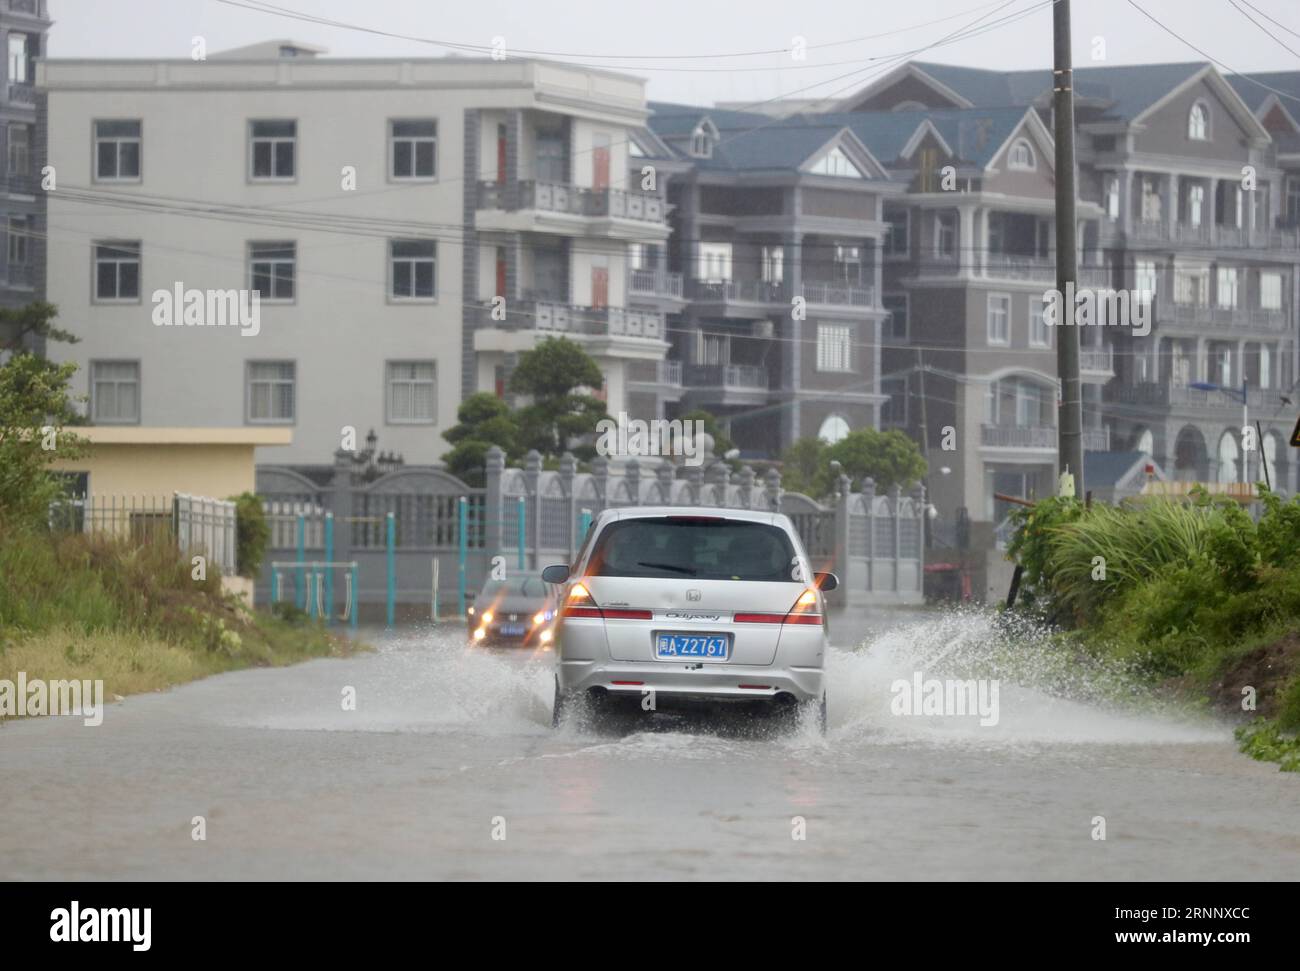 (170731) -- FUQING, 31 luglio 2017 -- le automobili corrono sulla strada navigabile nella Longtian Township della città di Fuqing, provincia del Fujian della Cina sudorientale, 31 luglio 2017. Il tifone Haitang, il decimo tifone di quest'anno, è atterrato alle 2:50 del lunedì a Fuqing City. Il ciclone tropicale ha seguito il tifone Nesat, il nono quest'anno, atterrato nella stessa città alle 6 di domenica, secondo l'osservatorio meteorologico provinciale. I due tifoni portarono pesanti precipitazioni nella provincia, con precipitazioni superiori a 50 mm in 64 contee, città o distretti Foto Stock